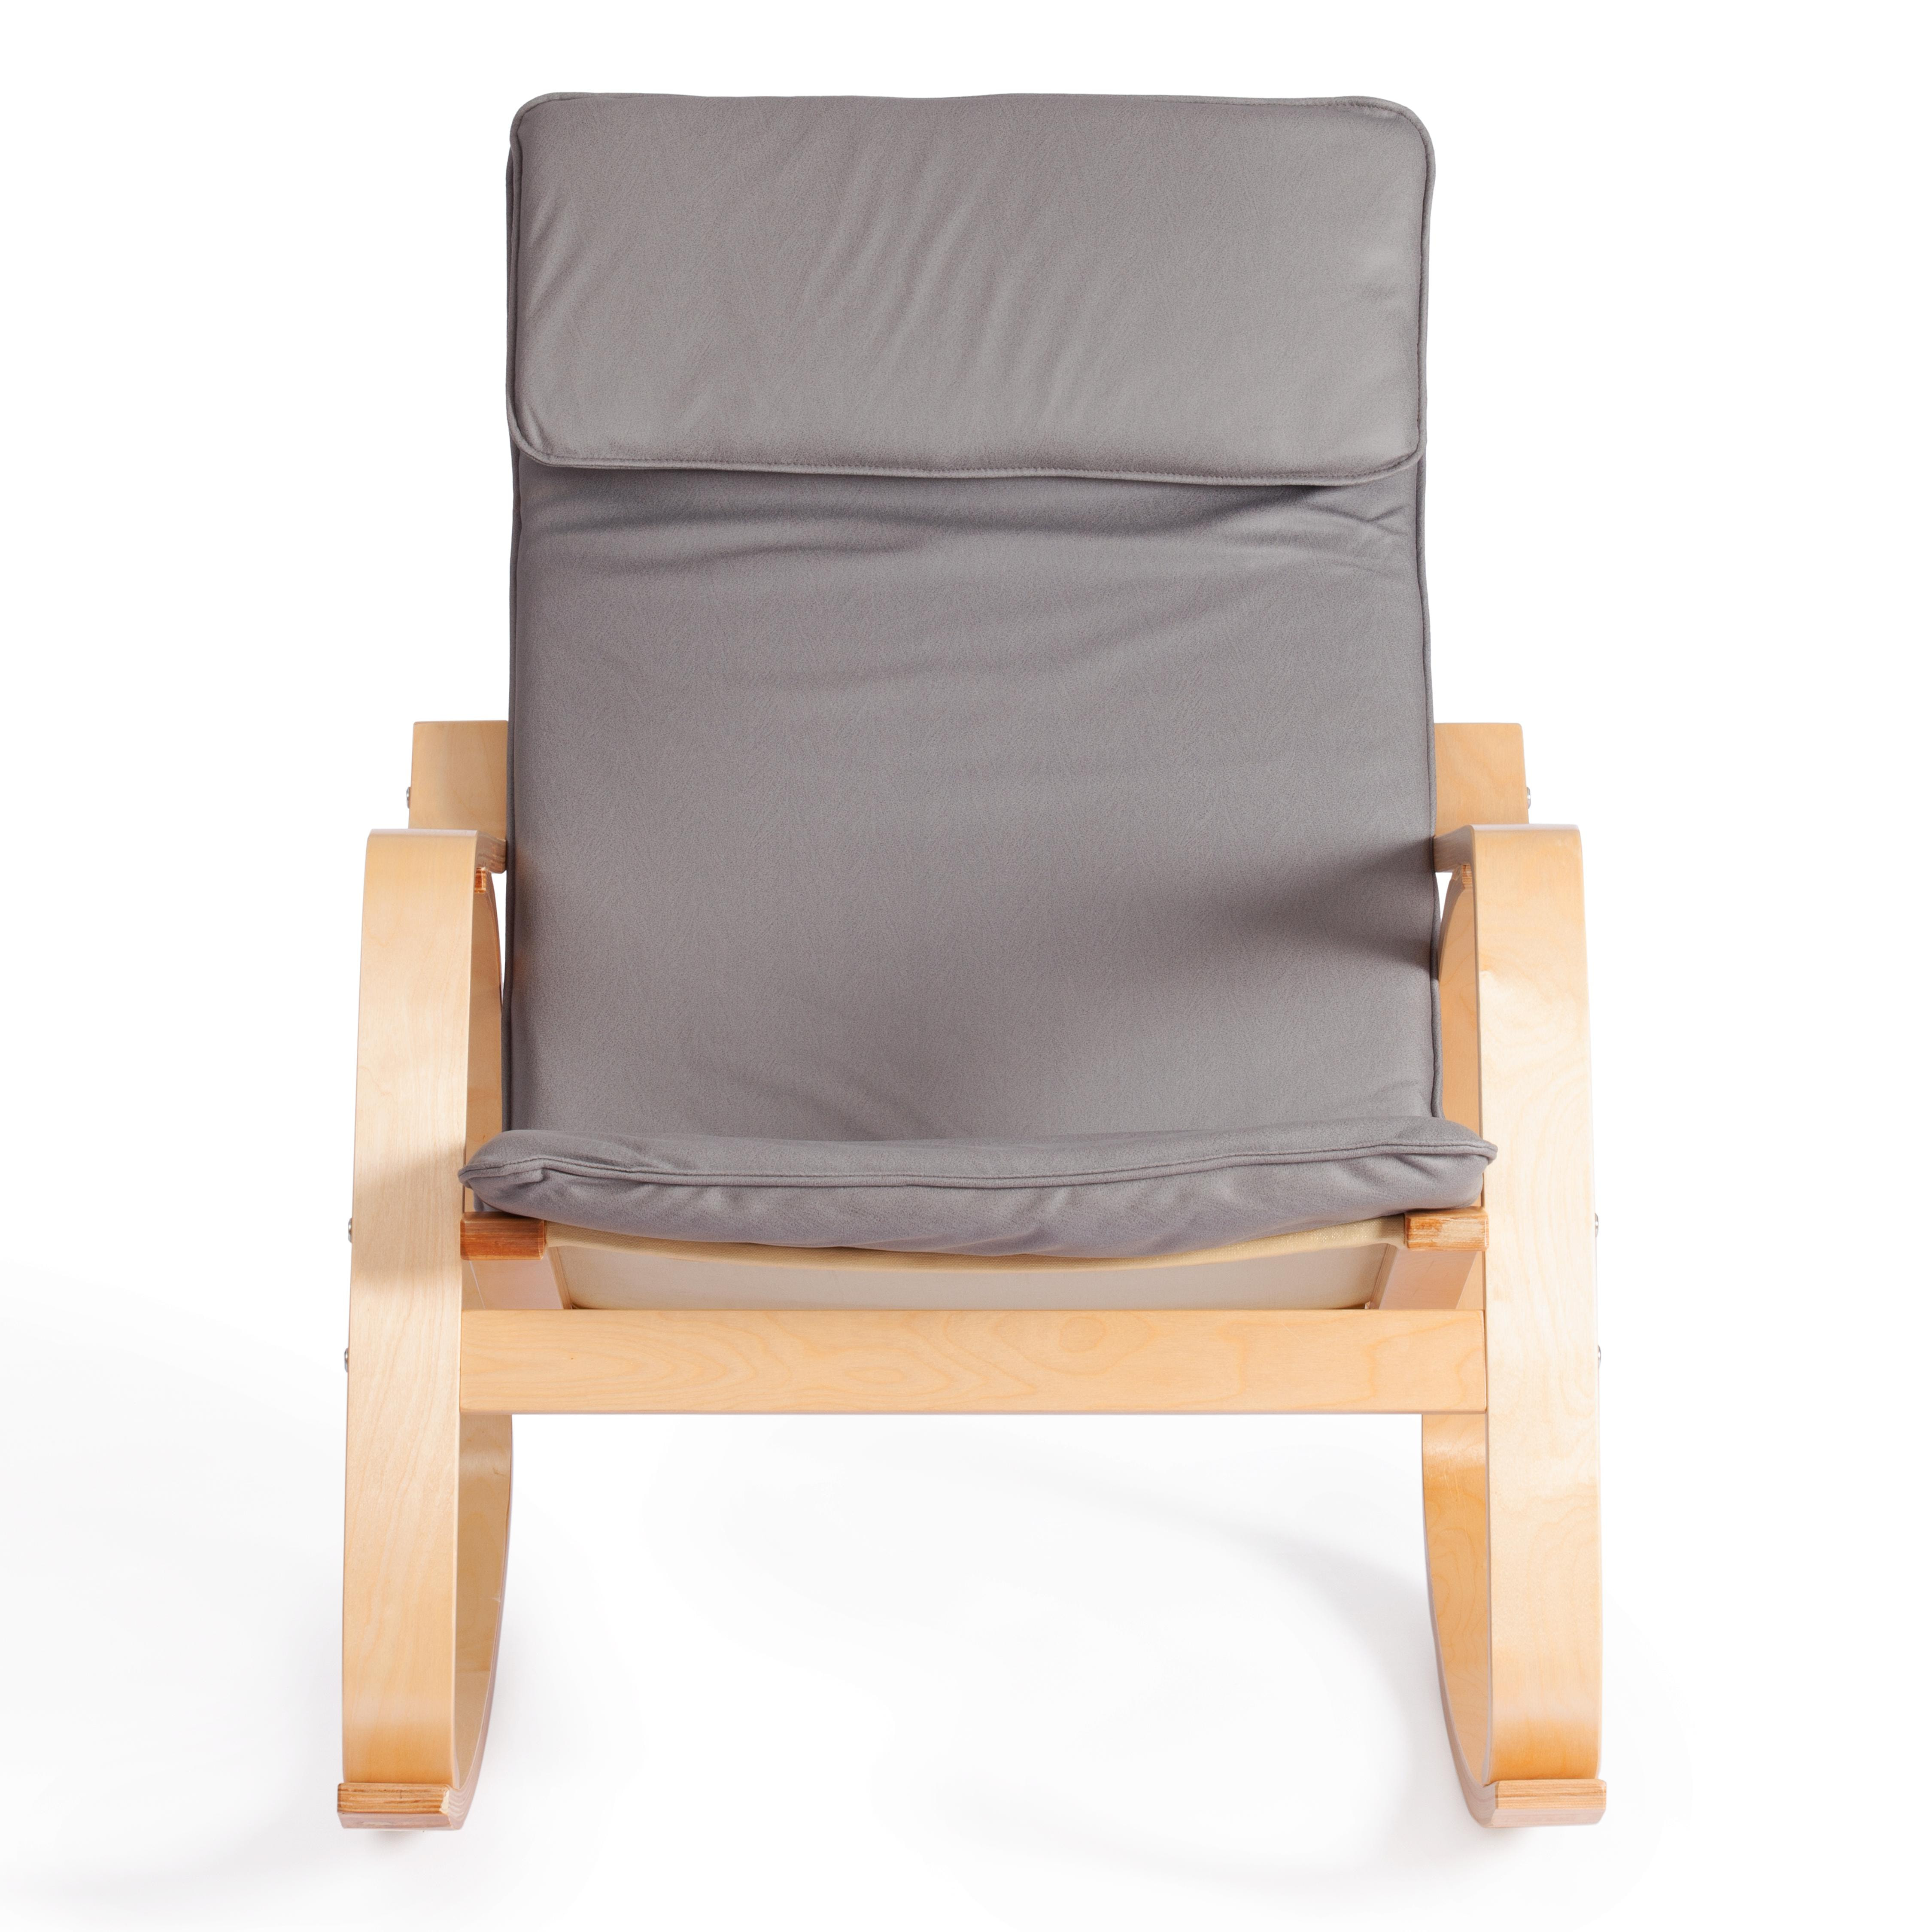 Кресло-качалка mod. AX3005 дерево береза, ткань: полиэстер/хлопок, 61х94,5х104 см, дерево: натуральный #1/ ткань светло-серая 2